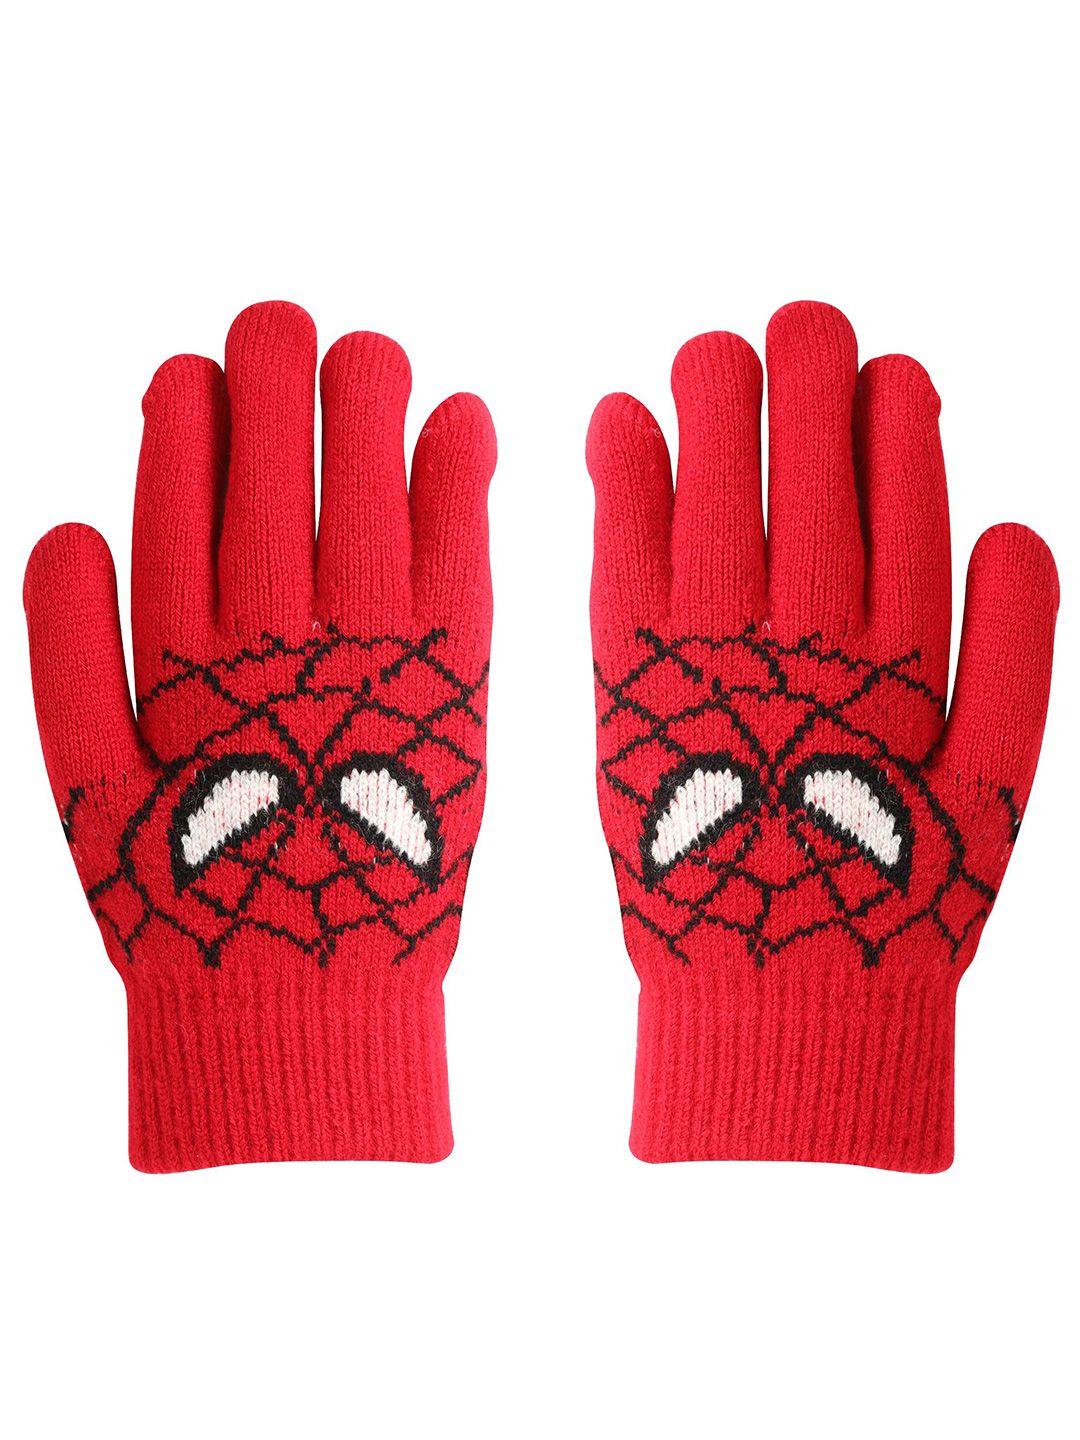 fabseasons kids spiderman patterned winter gloves